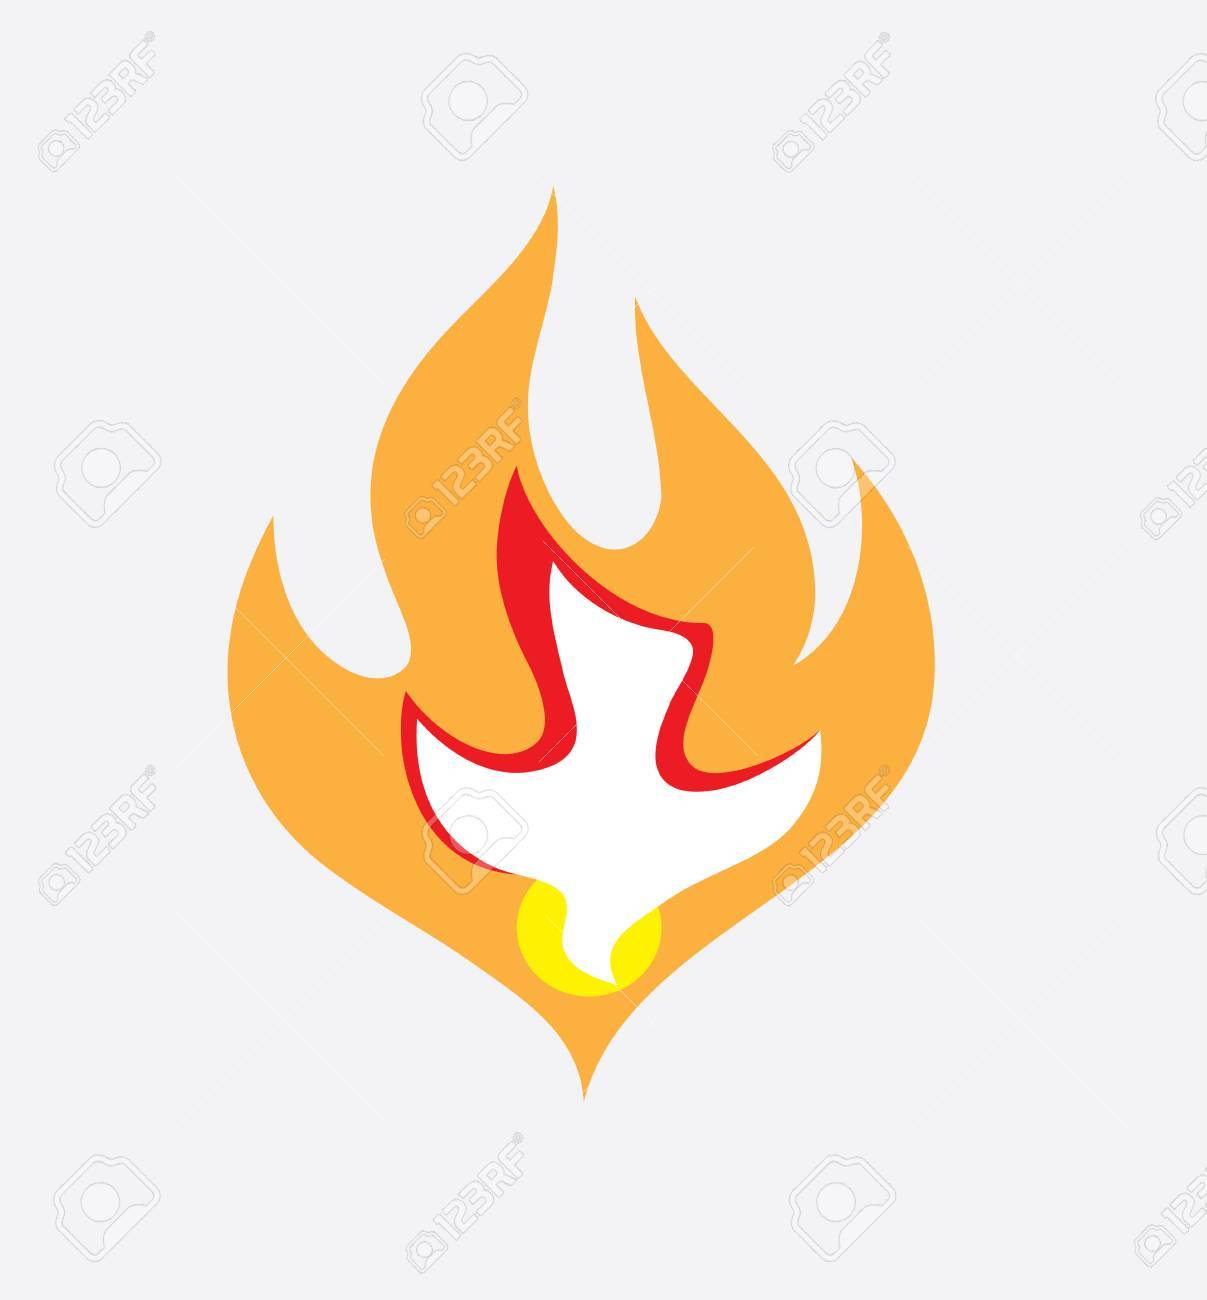 Holy spirit Fire, art vector design.